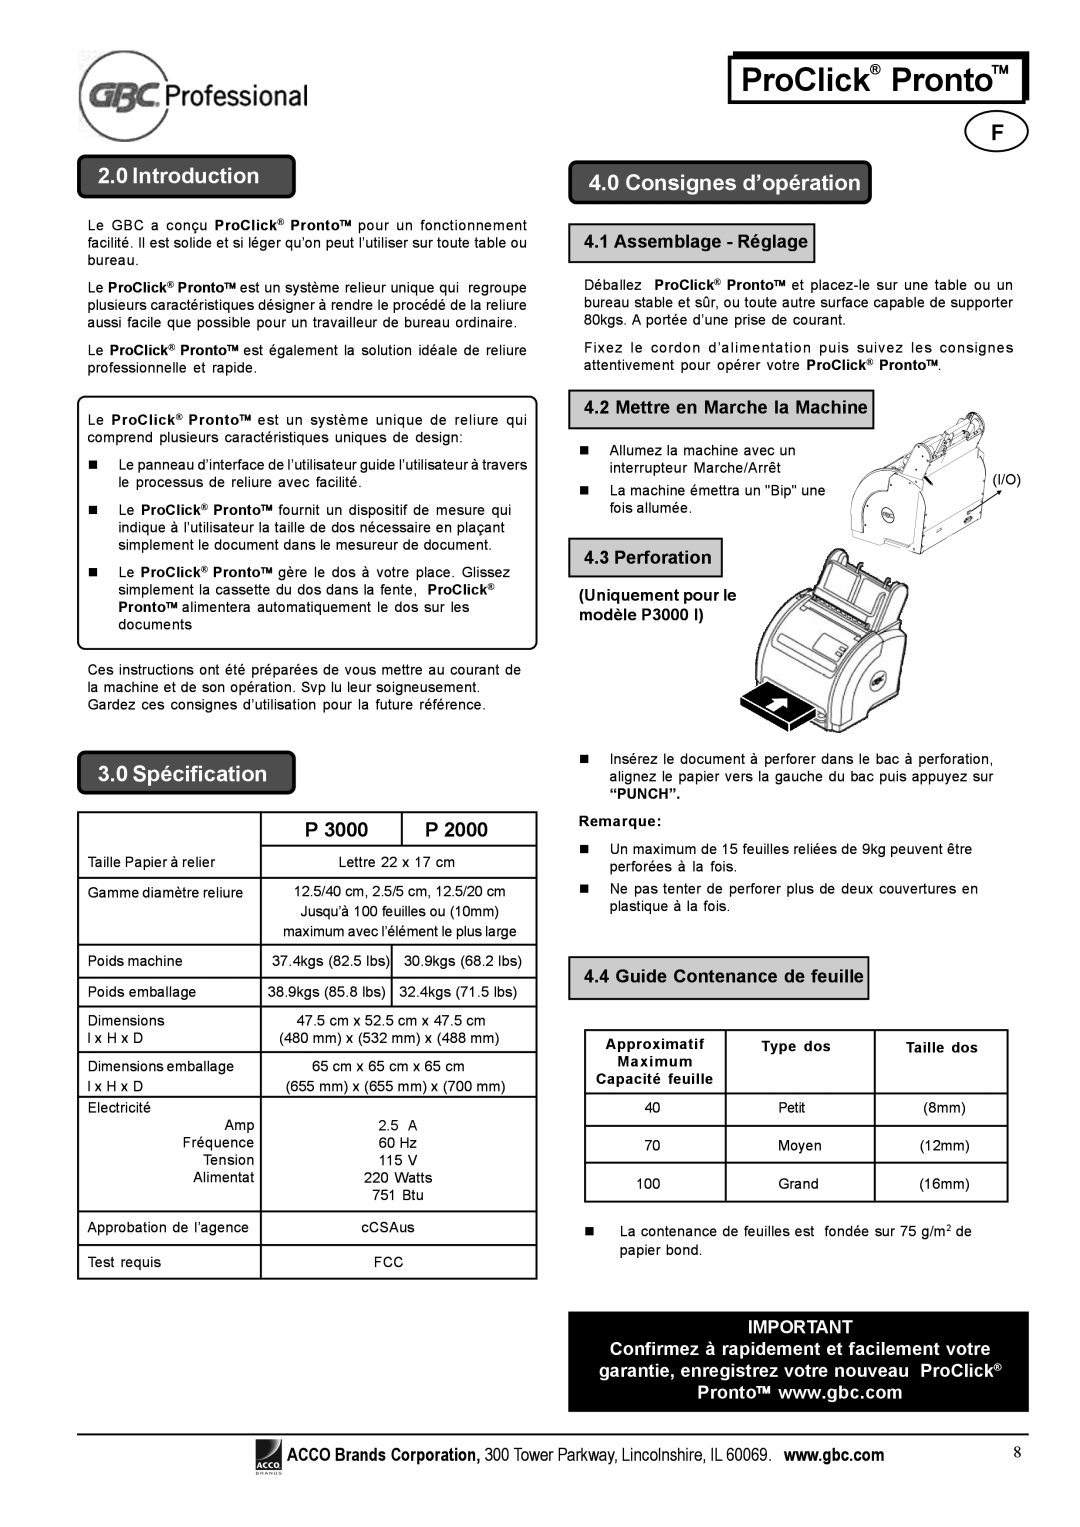 Tamron P3000 3.0 Spécification, Consignes d’opération, Assemblage - Réglage, Mettre en Marche la Machine, Perforation 